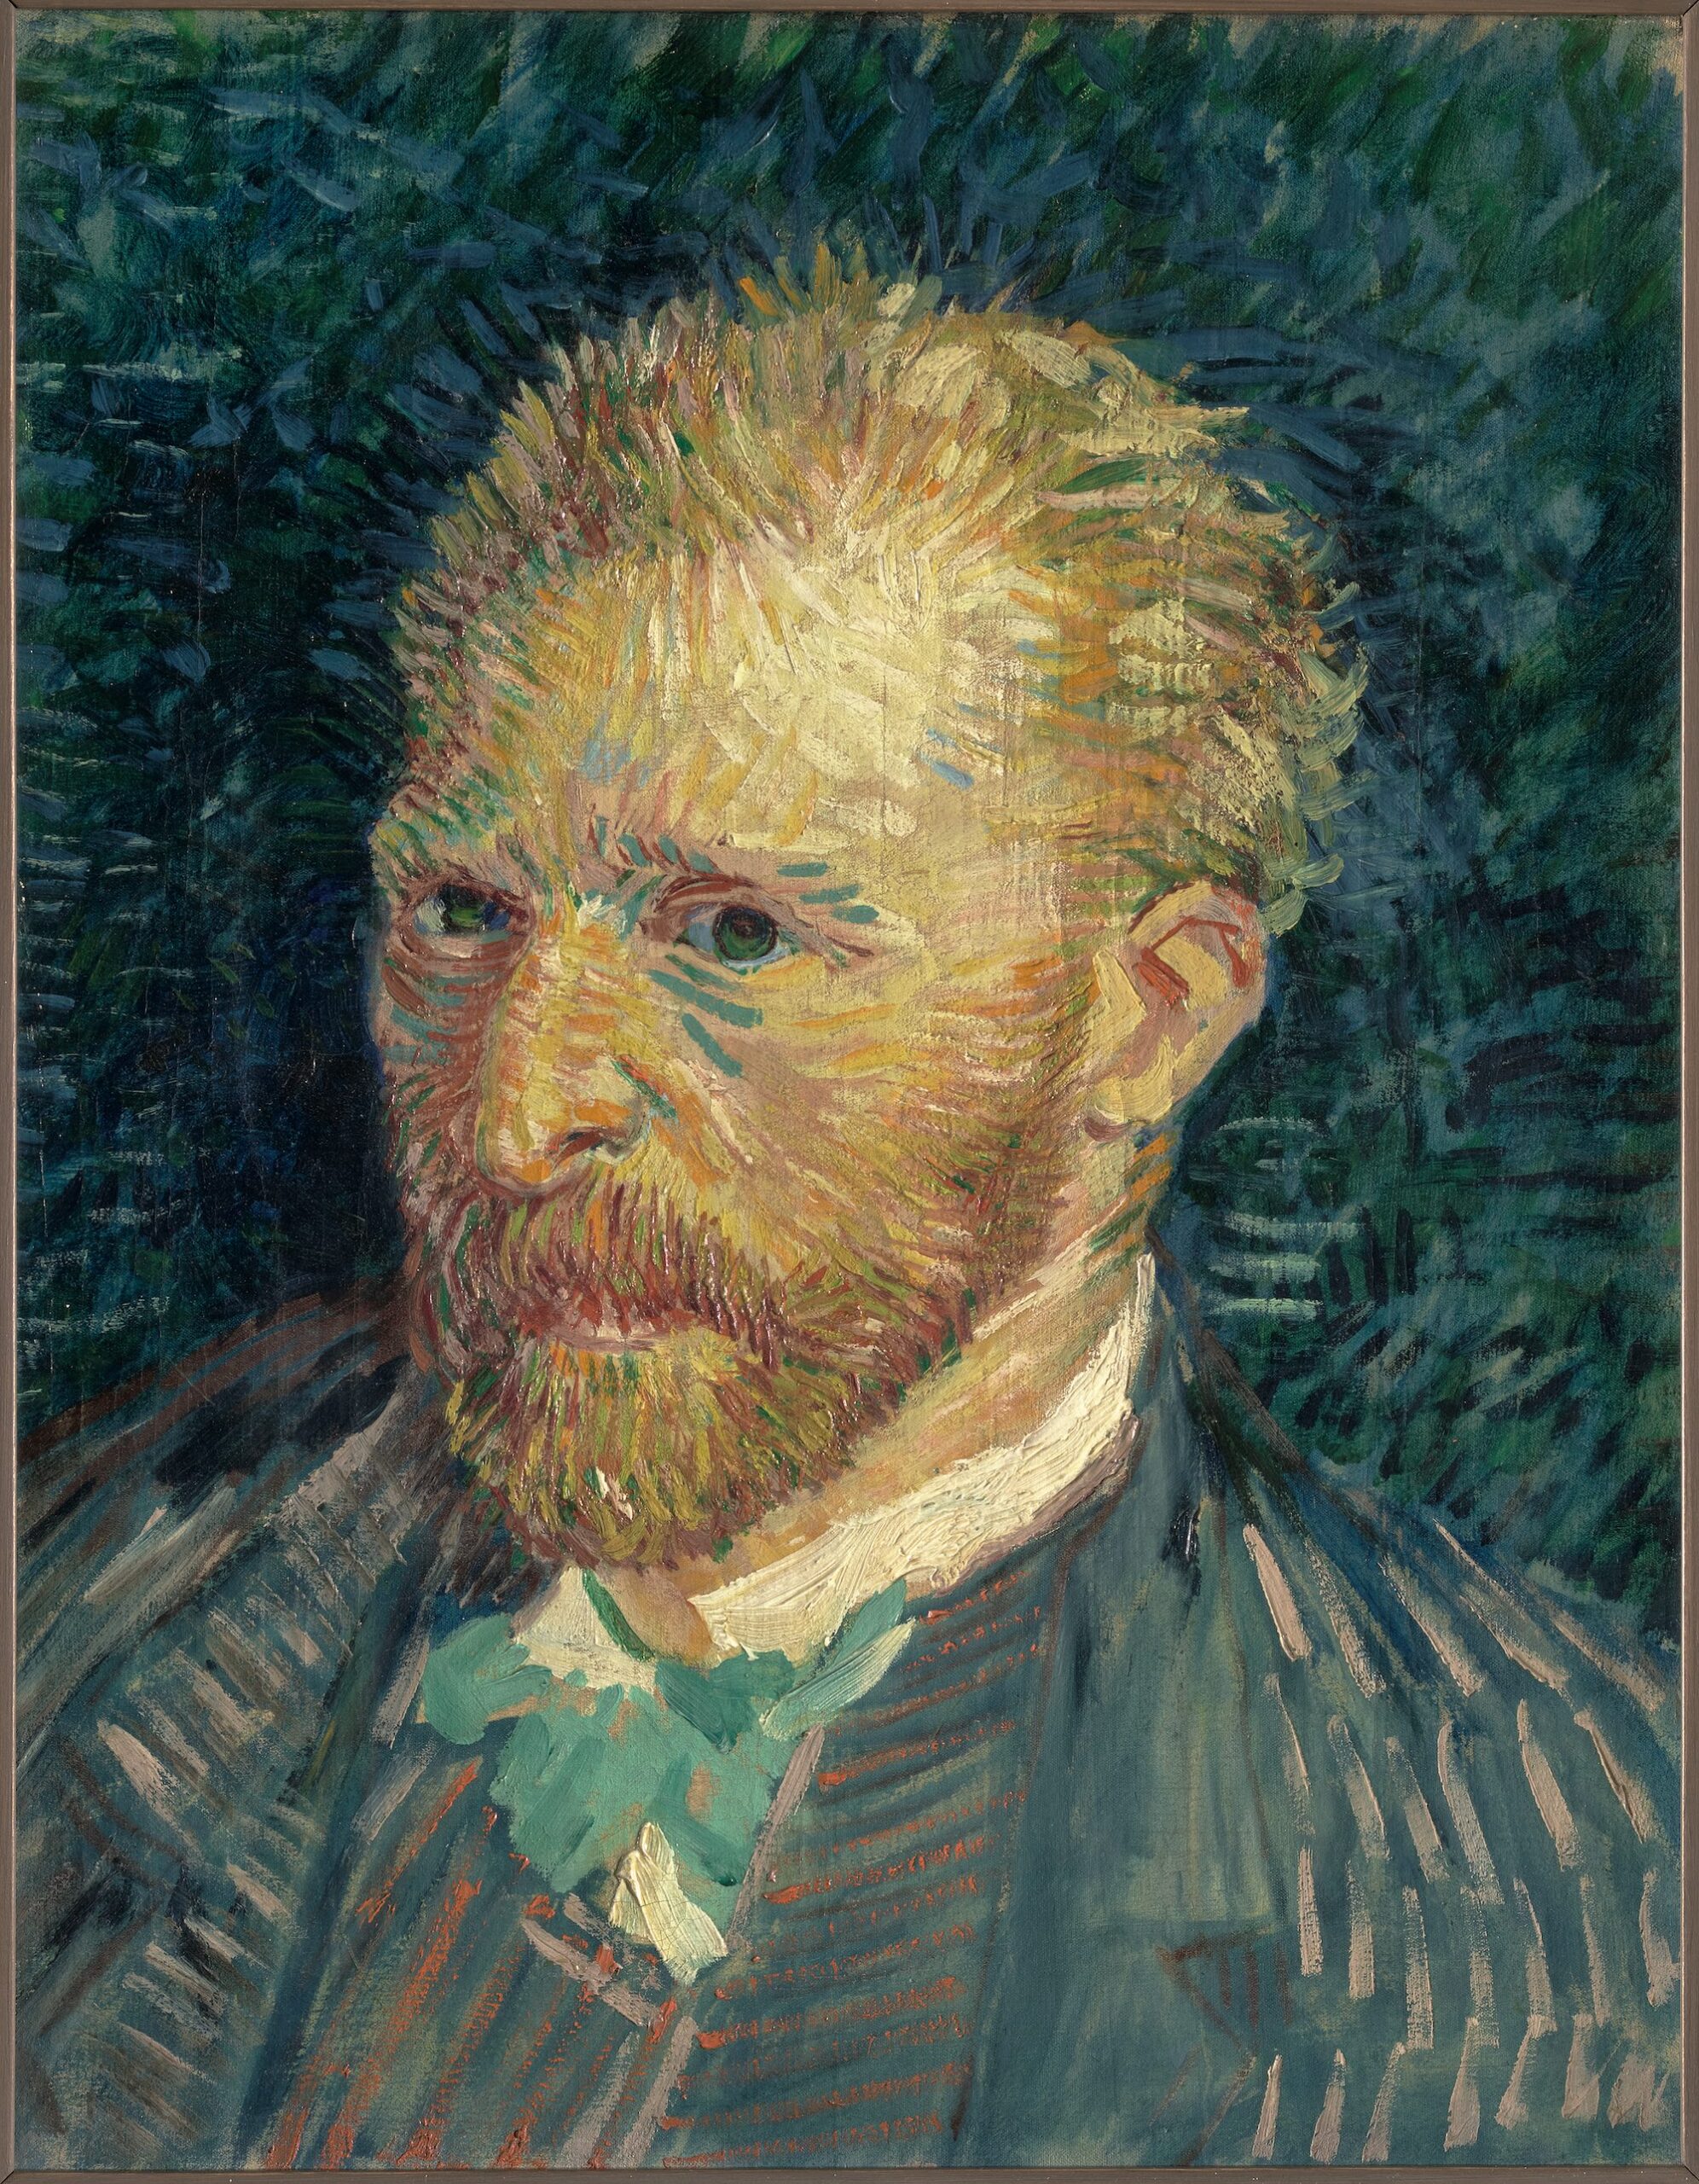 Vincent Van Gogh (1853-1890), Portrait de l’artiste, 1887. Huile sur toile, 44 x 35,5 cm. Paris, musée d’Orsay. Photo service de presse. © Musée d’Orsay, Dist. RMN-Grand Palais / Patrice Schmidt